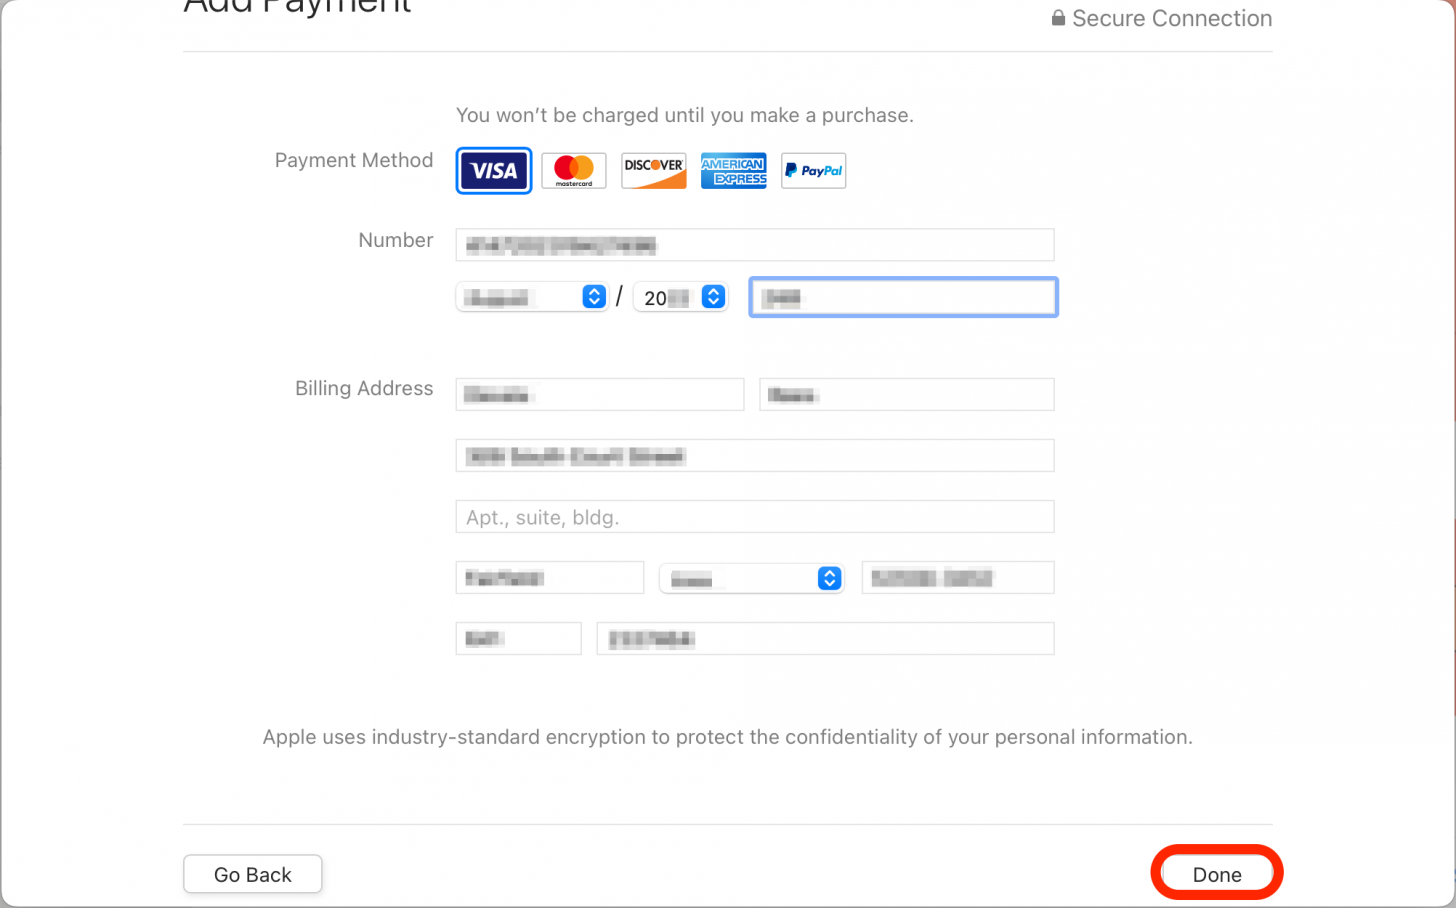 Geben Sie die neuen Kreditkarteninformationen ein und klicken Sie dann auf Fertig.